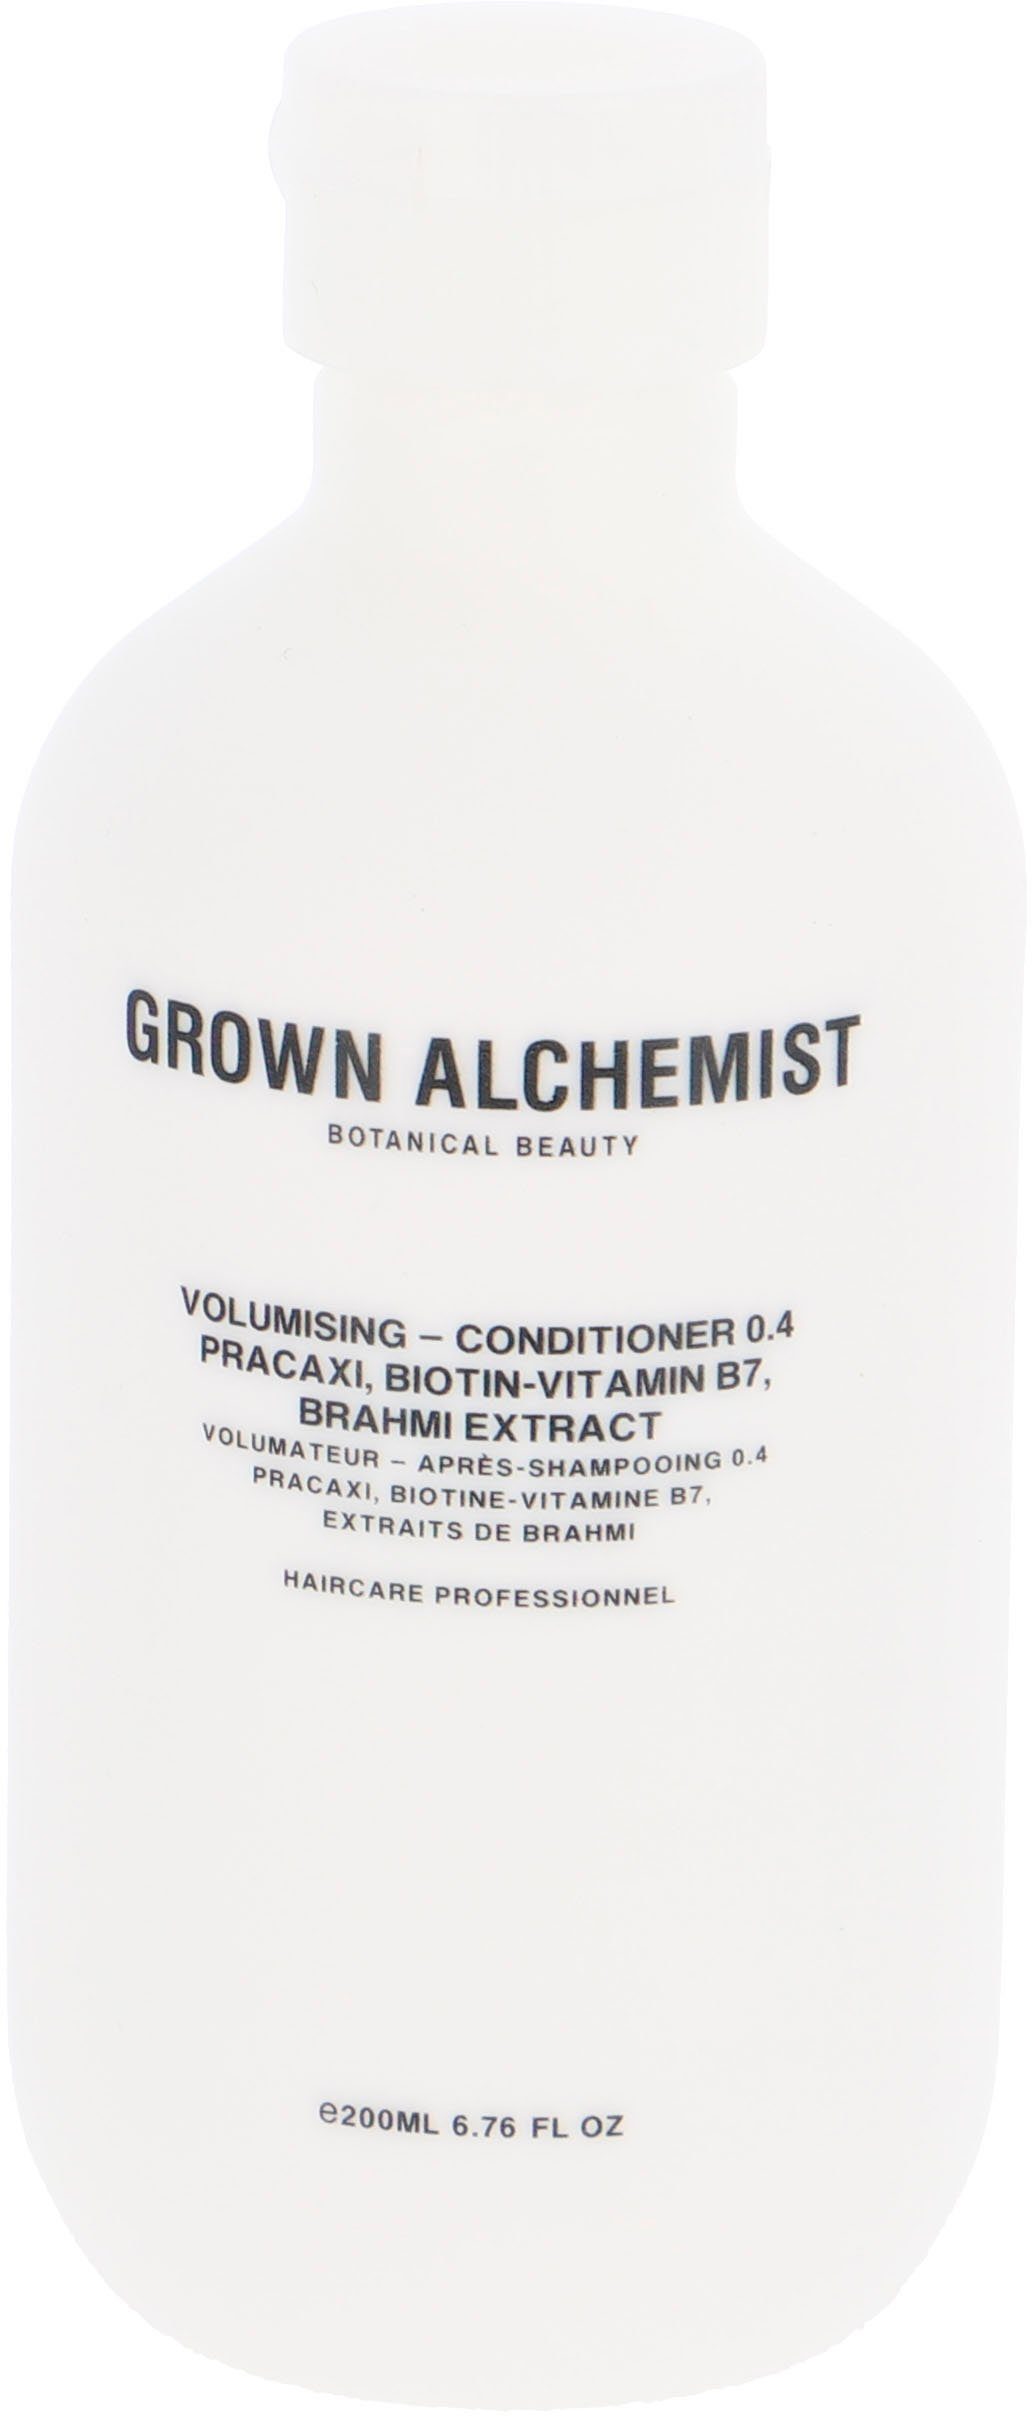 GROWN ALCHEMIST Haarspülung 0.4, Extract Biotin-Vitamin B7, Volumising Pracaxi, - Brahmi Conditioner